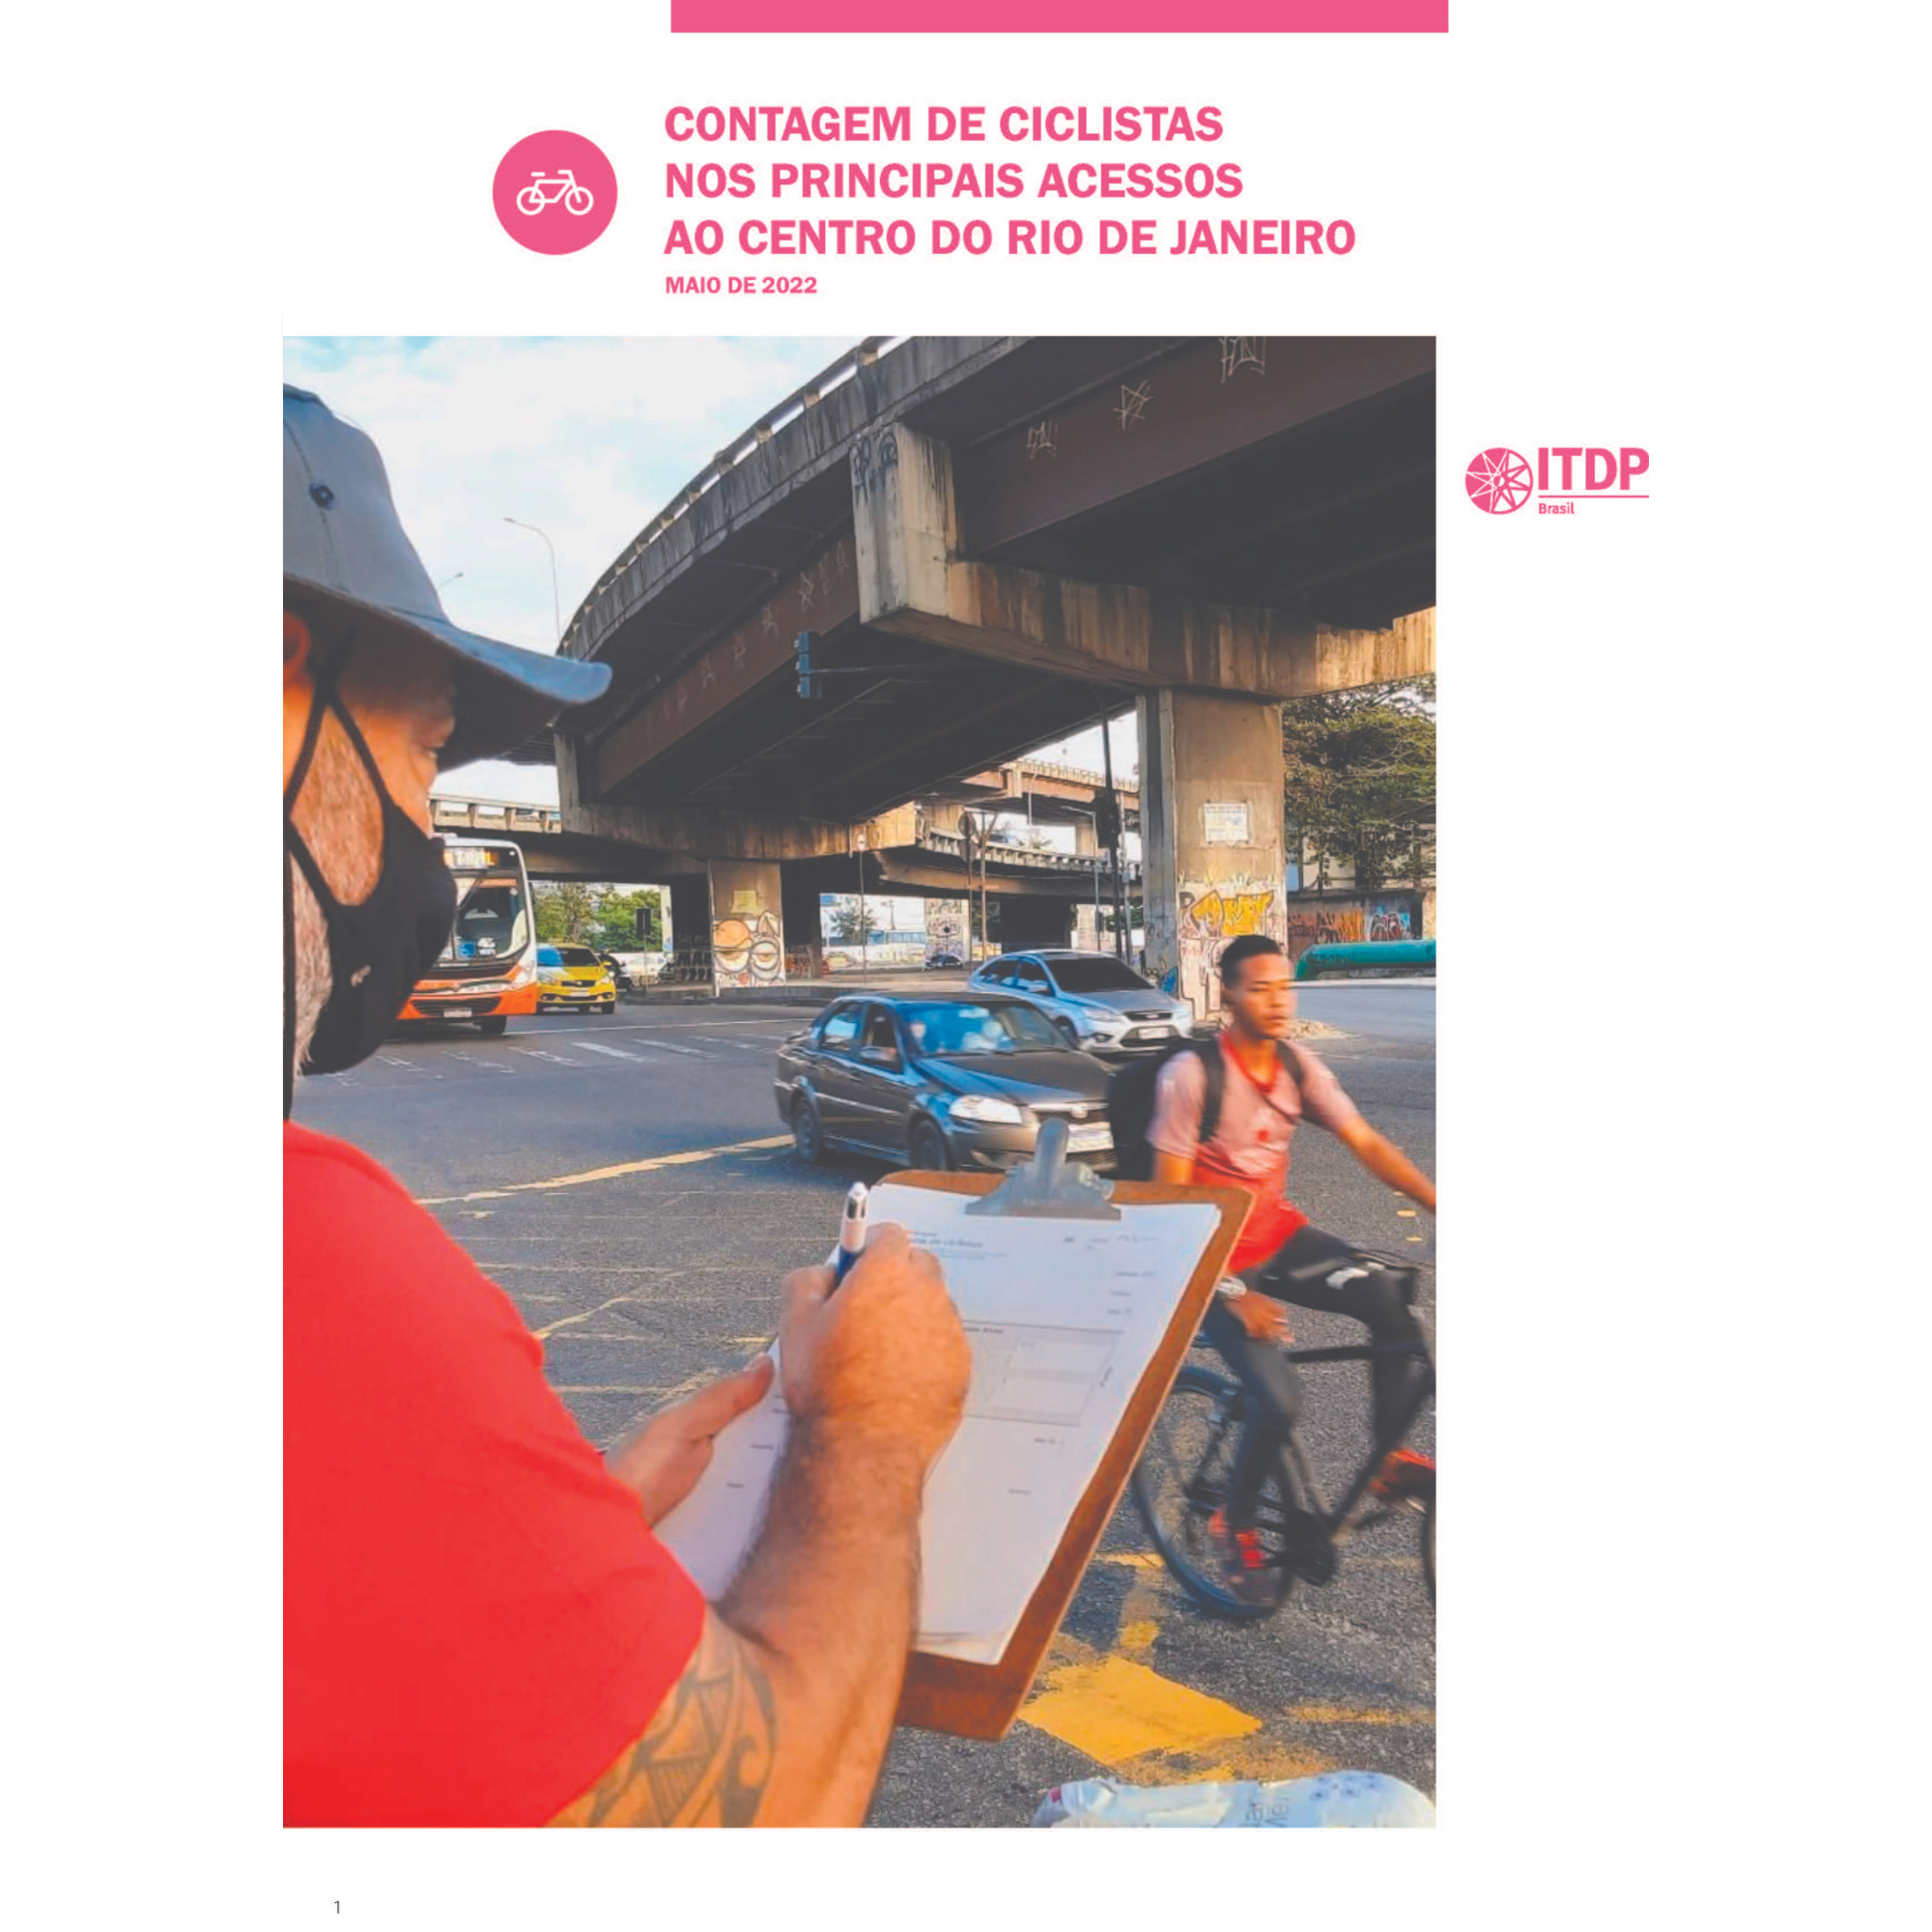 Contagem de ciclistas nos principais acessos ao Centro do Rio de Janeiro